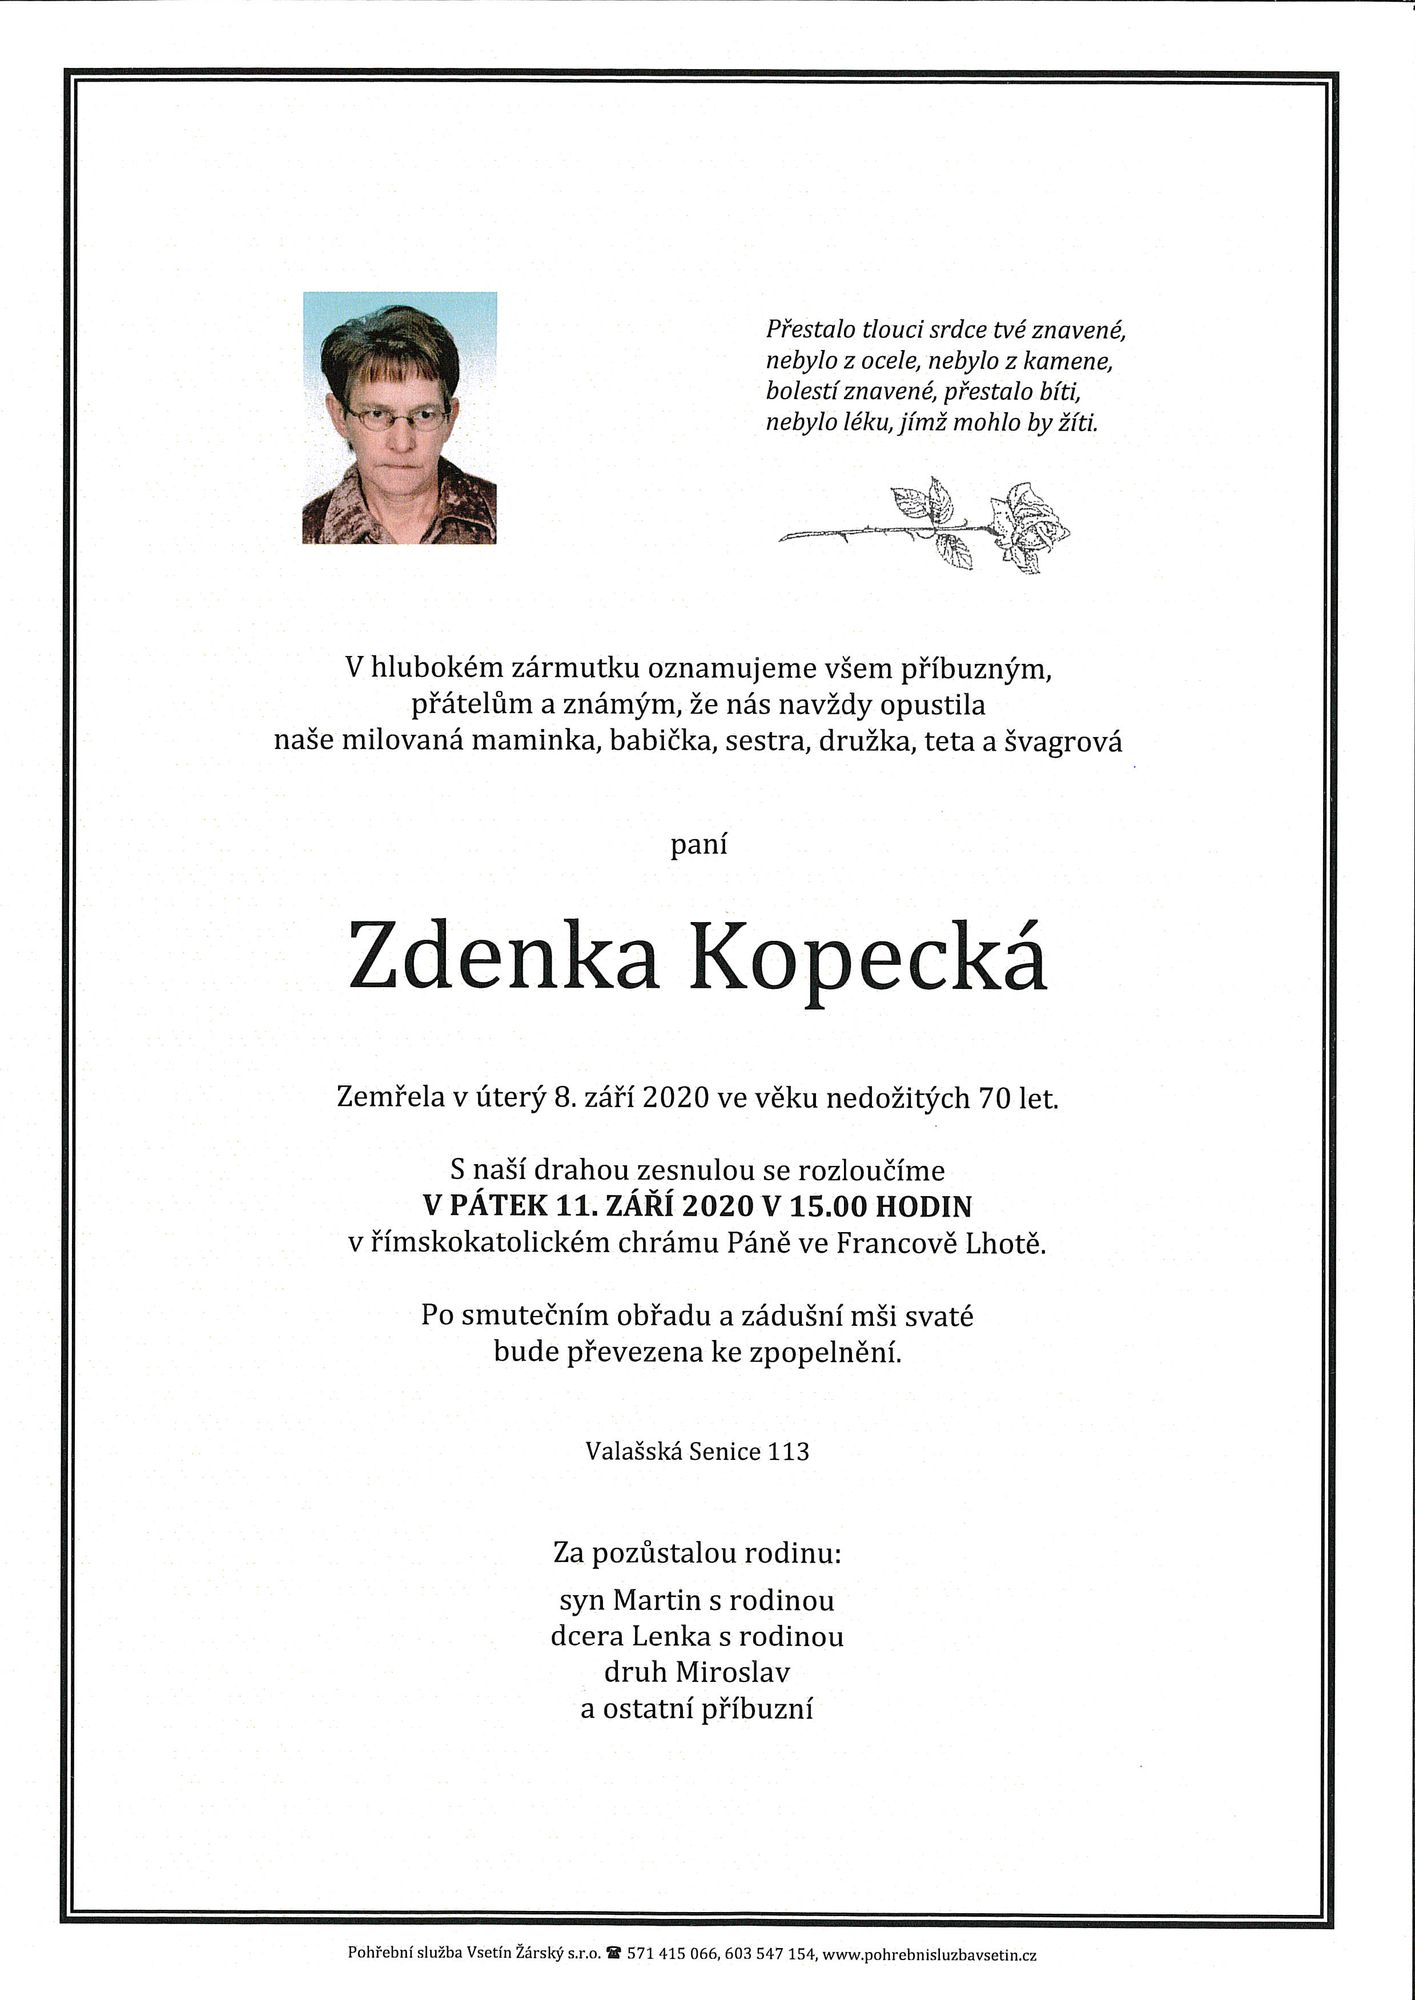 Zdenka Kopecká